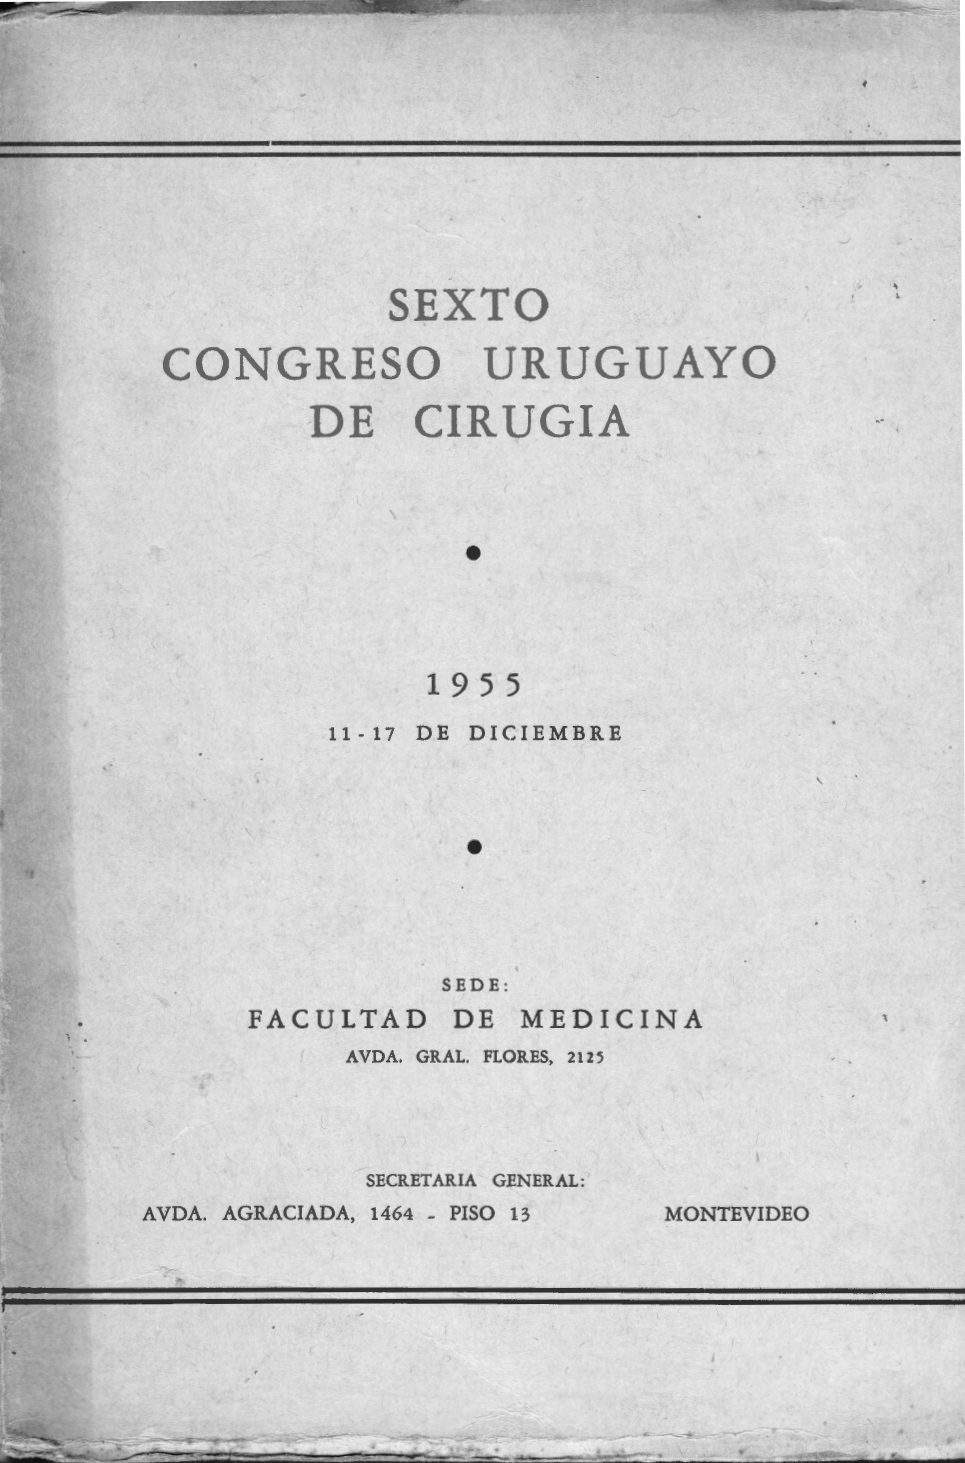 					Ver 1955: Congresos Uruguayos de Cirugía 
				